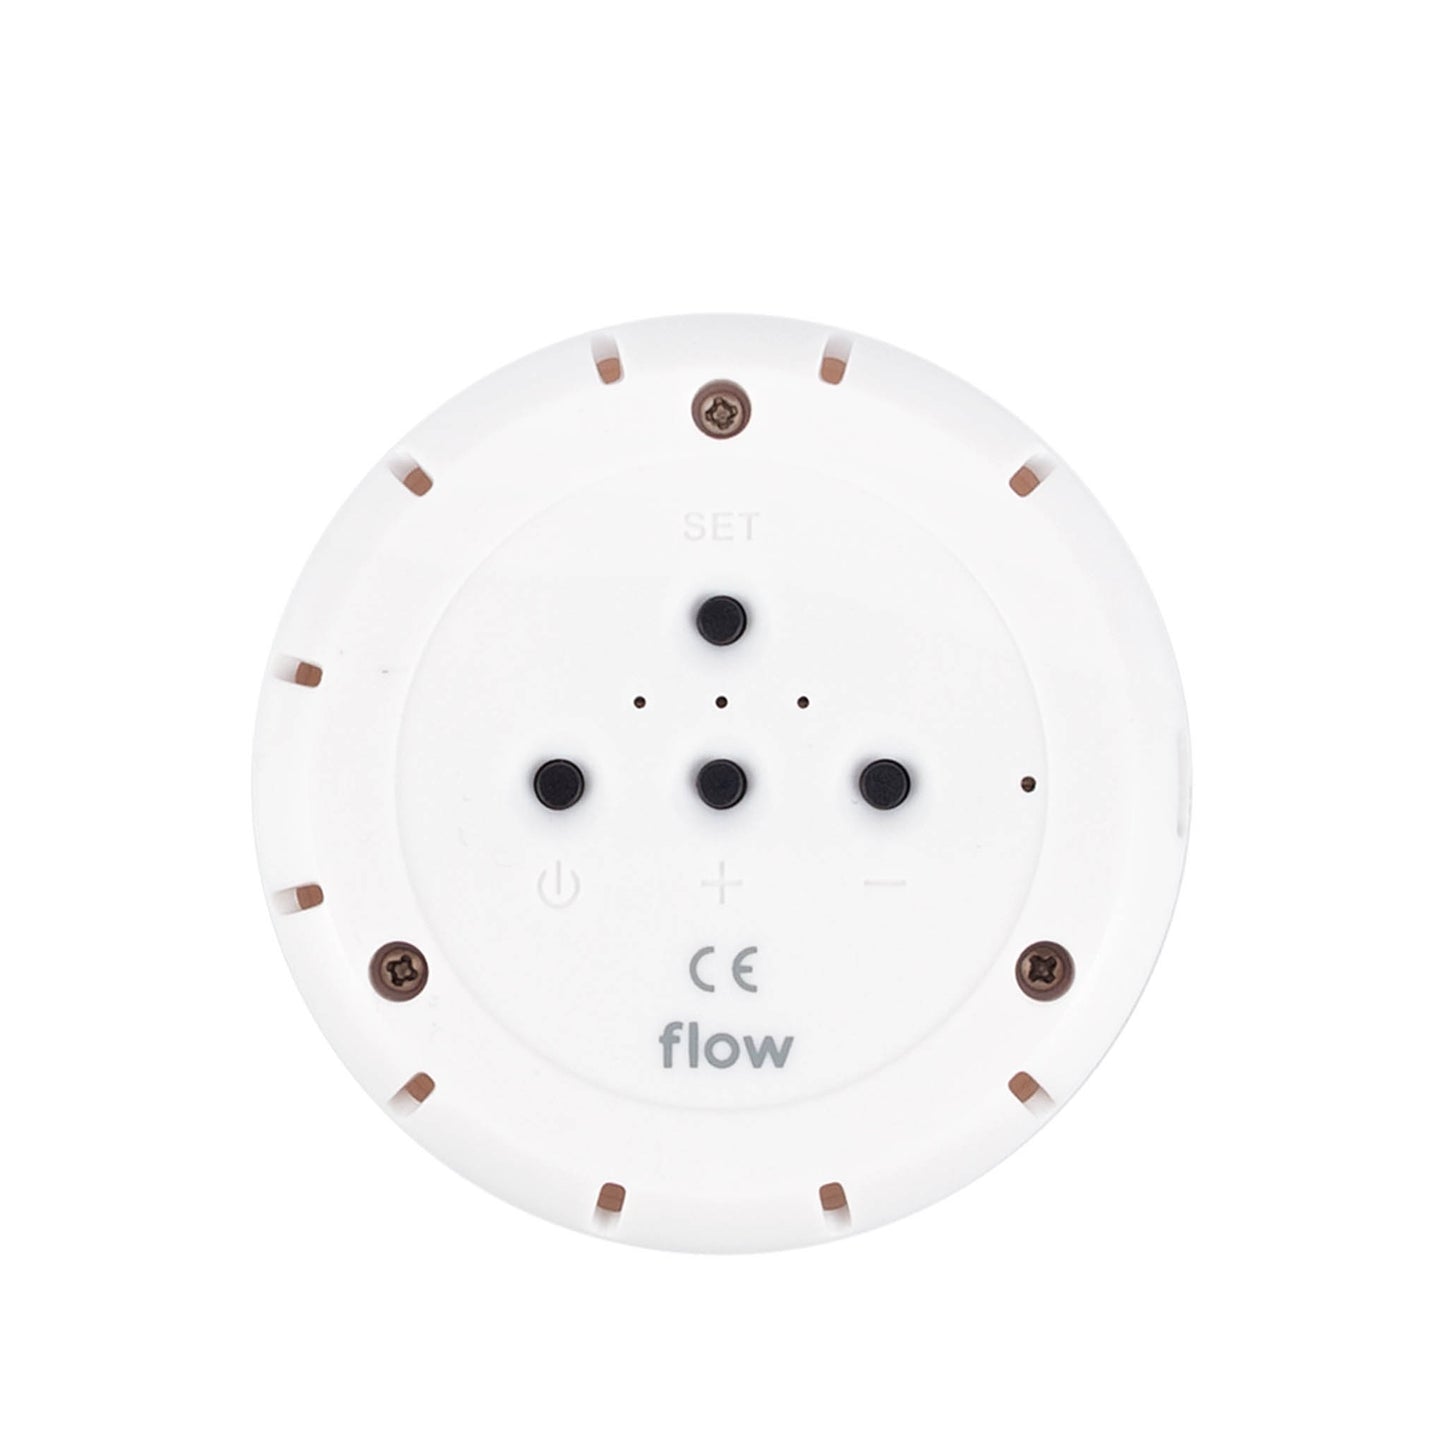 Flow Amsterdam - Kuscheltier mit Bluetooth Lautsprecher "Olly Bluetooth speaker" | off-white - Leja Concept Store